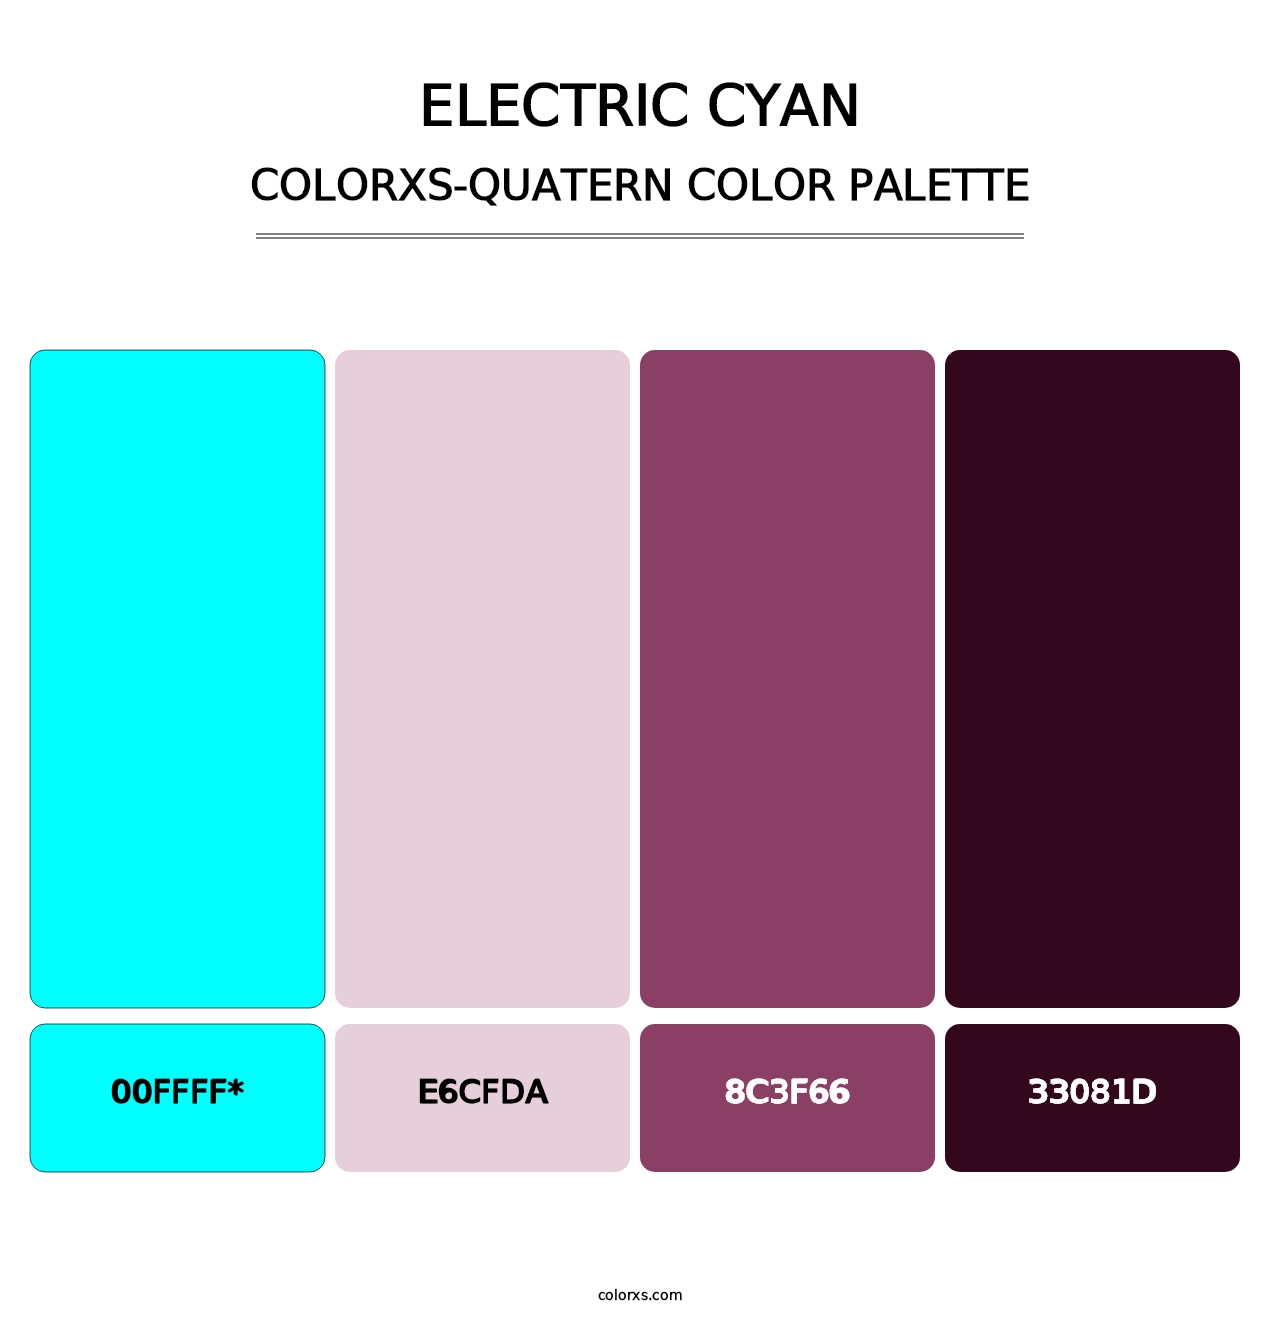 Electric Cyan - Colorxs Quad Palette